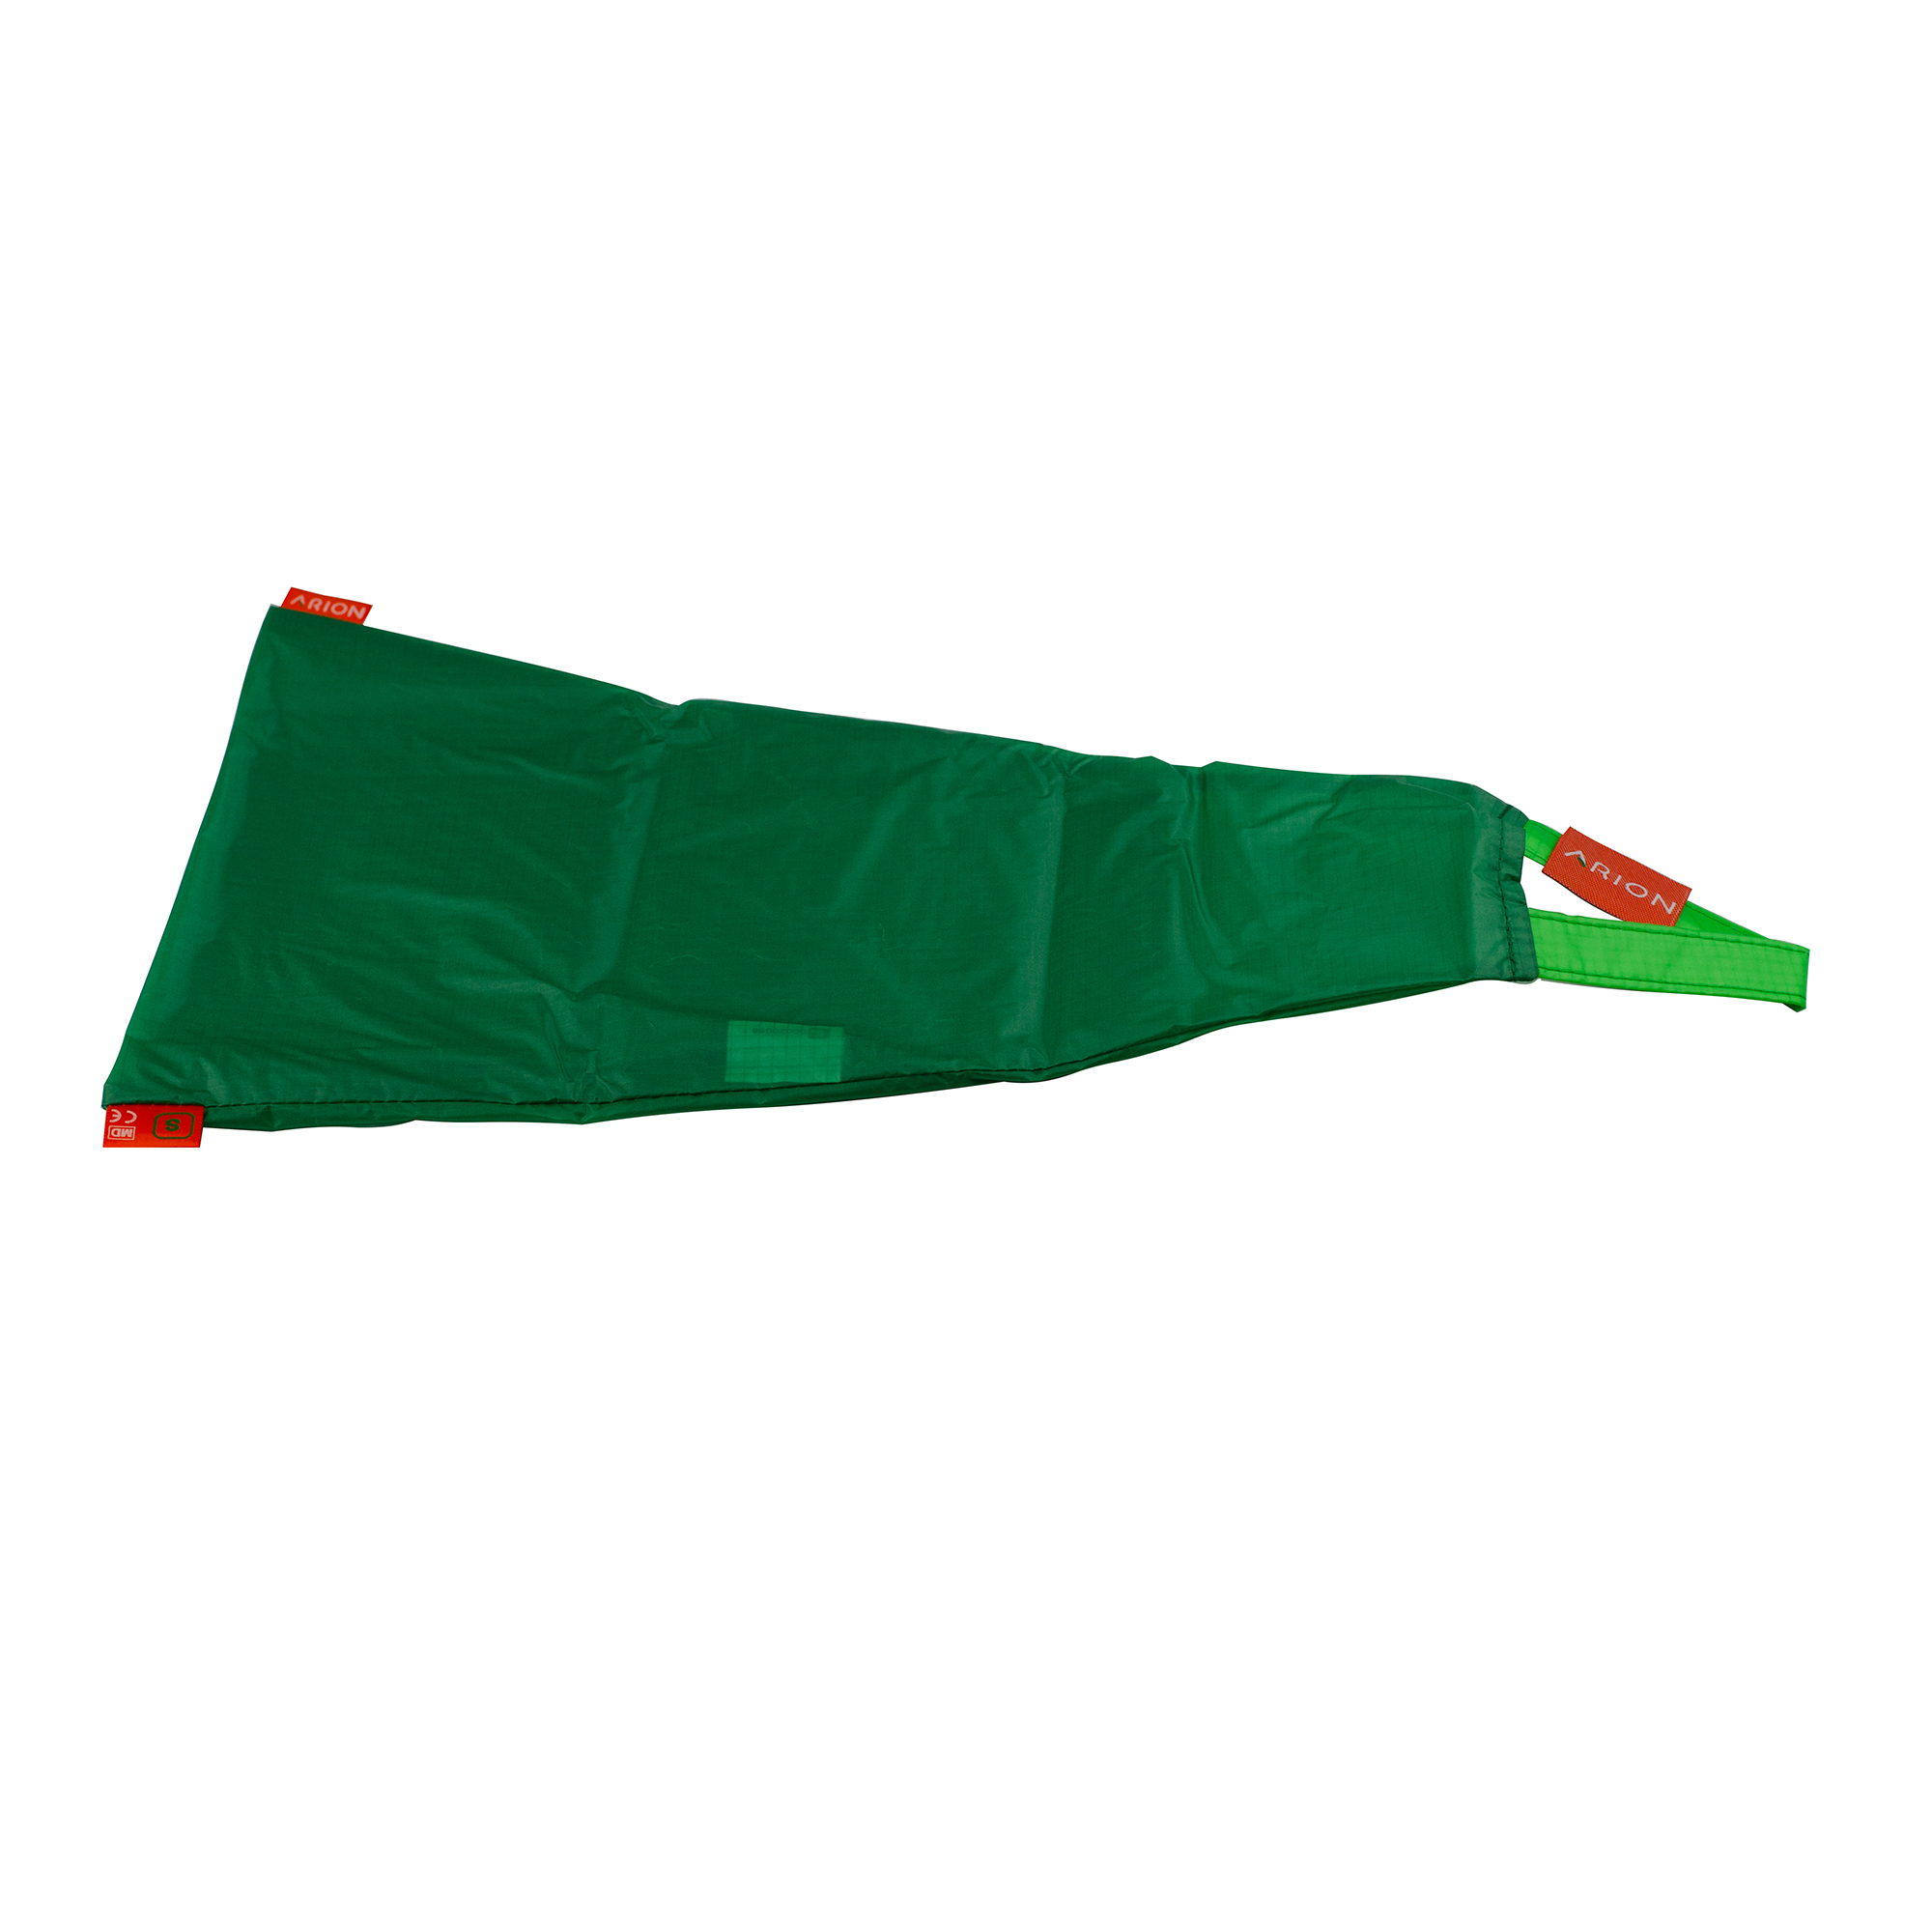 Sundo Arion Easy-Slide Anziehhilfe, grün, XL ab Gr. 42